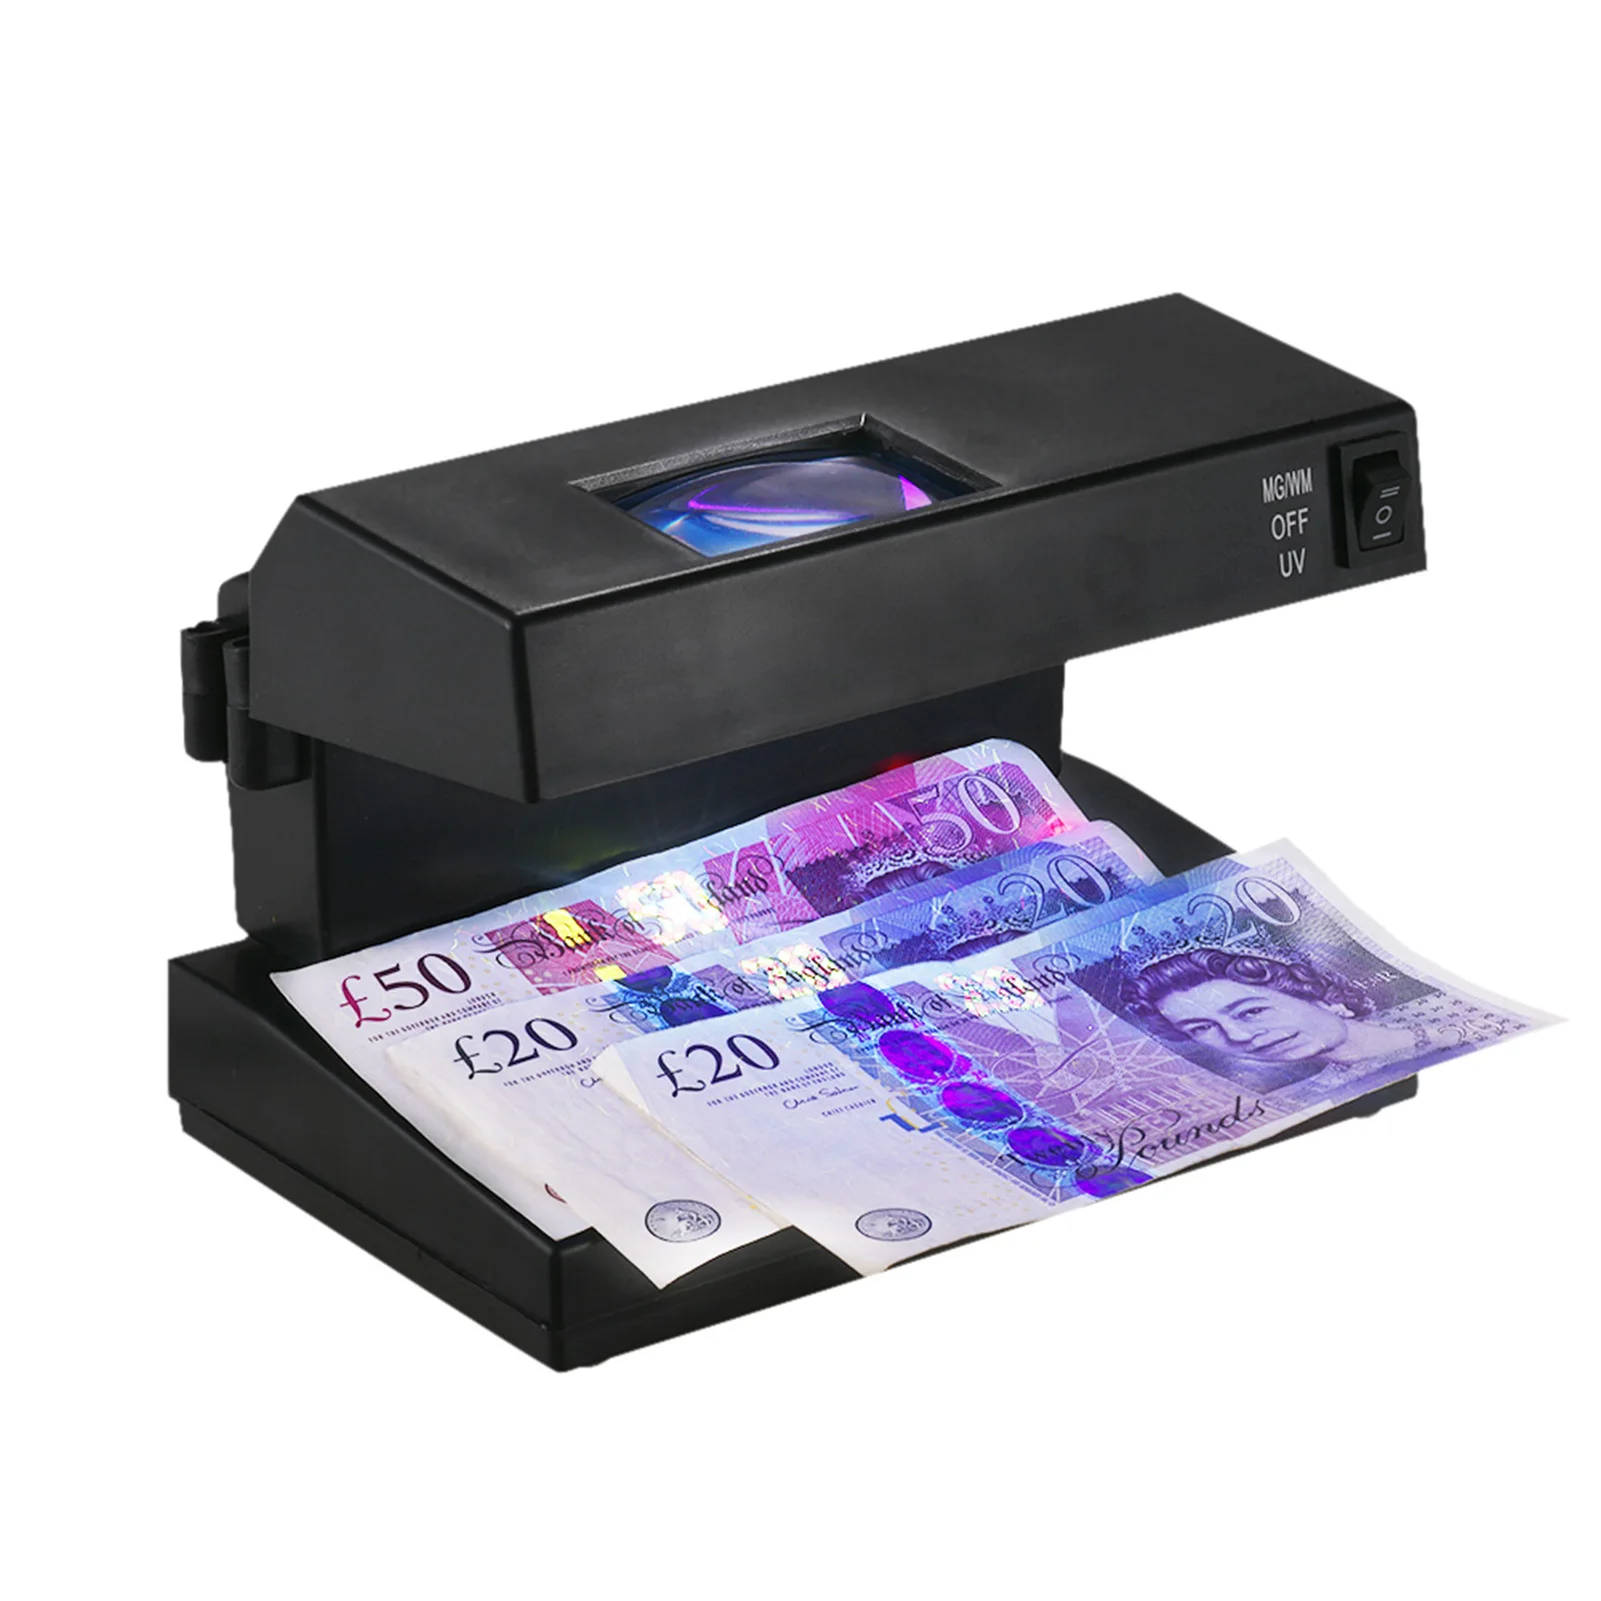 Přenosné ploše padělek návrh zákonu detektor hotové peníze devizy banknotes poznámky checker stroj podpora ultrafialové záření UV a filigrán